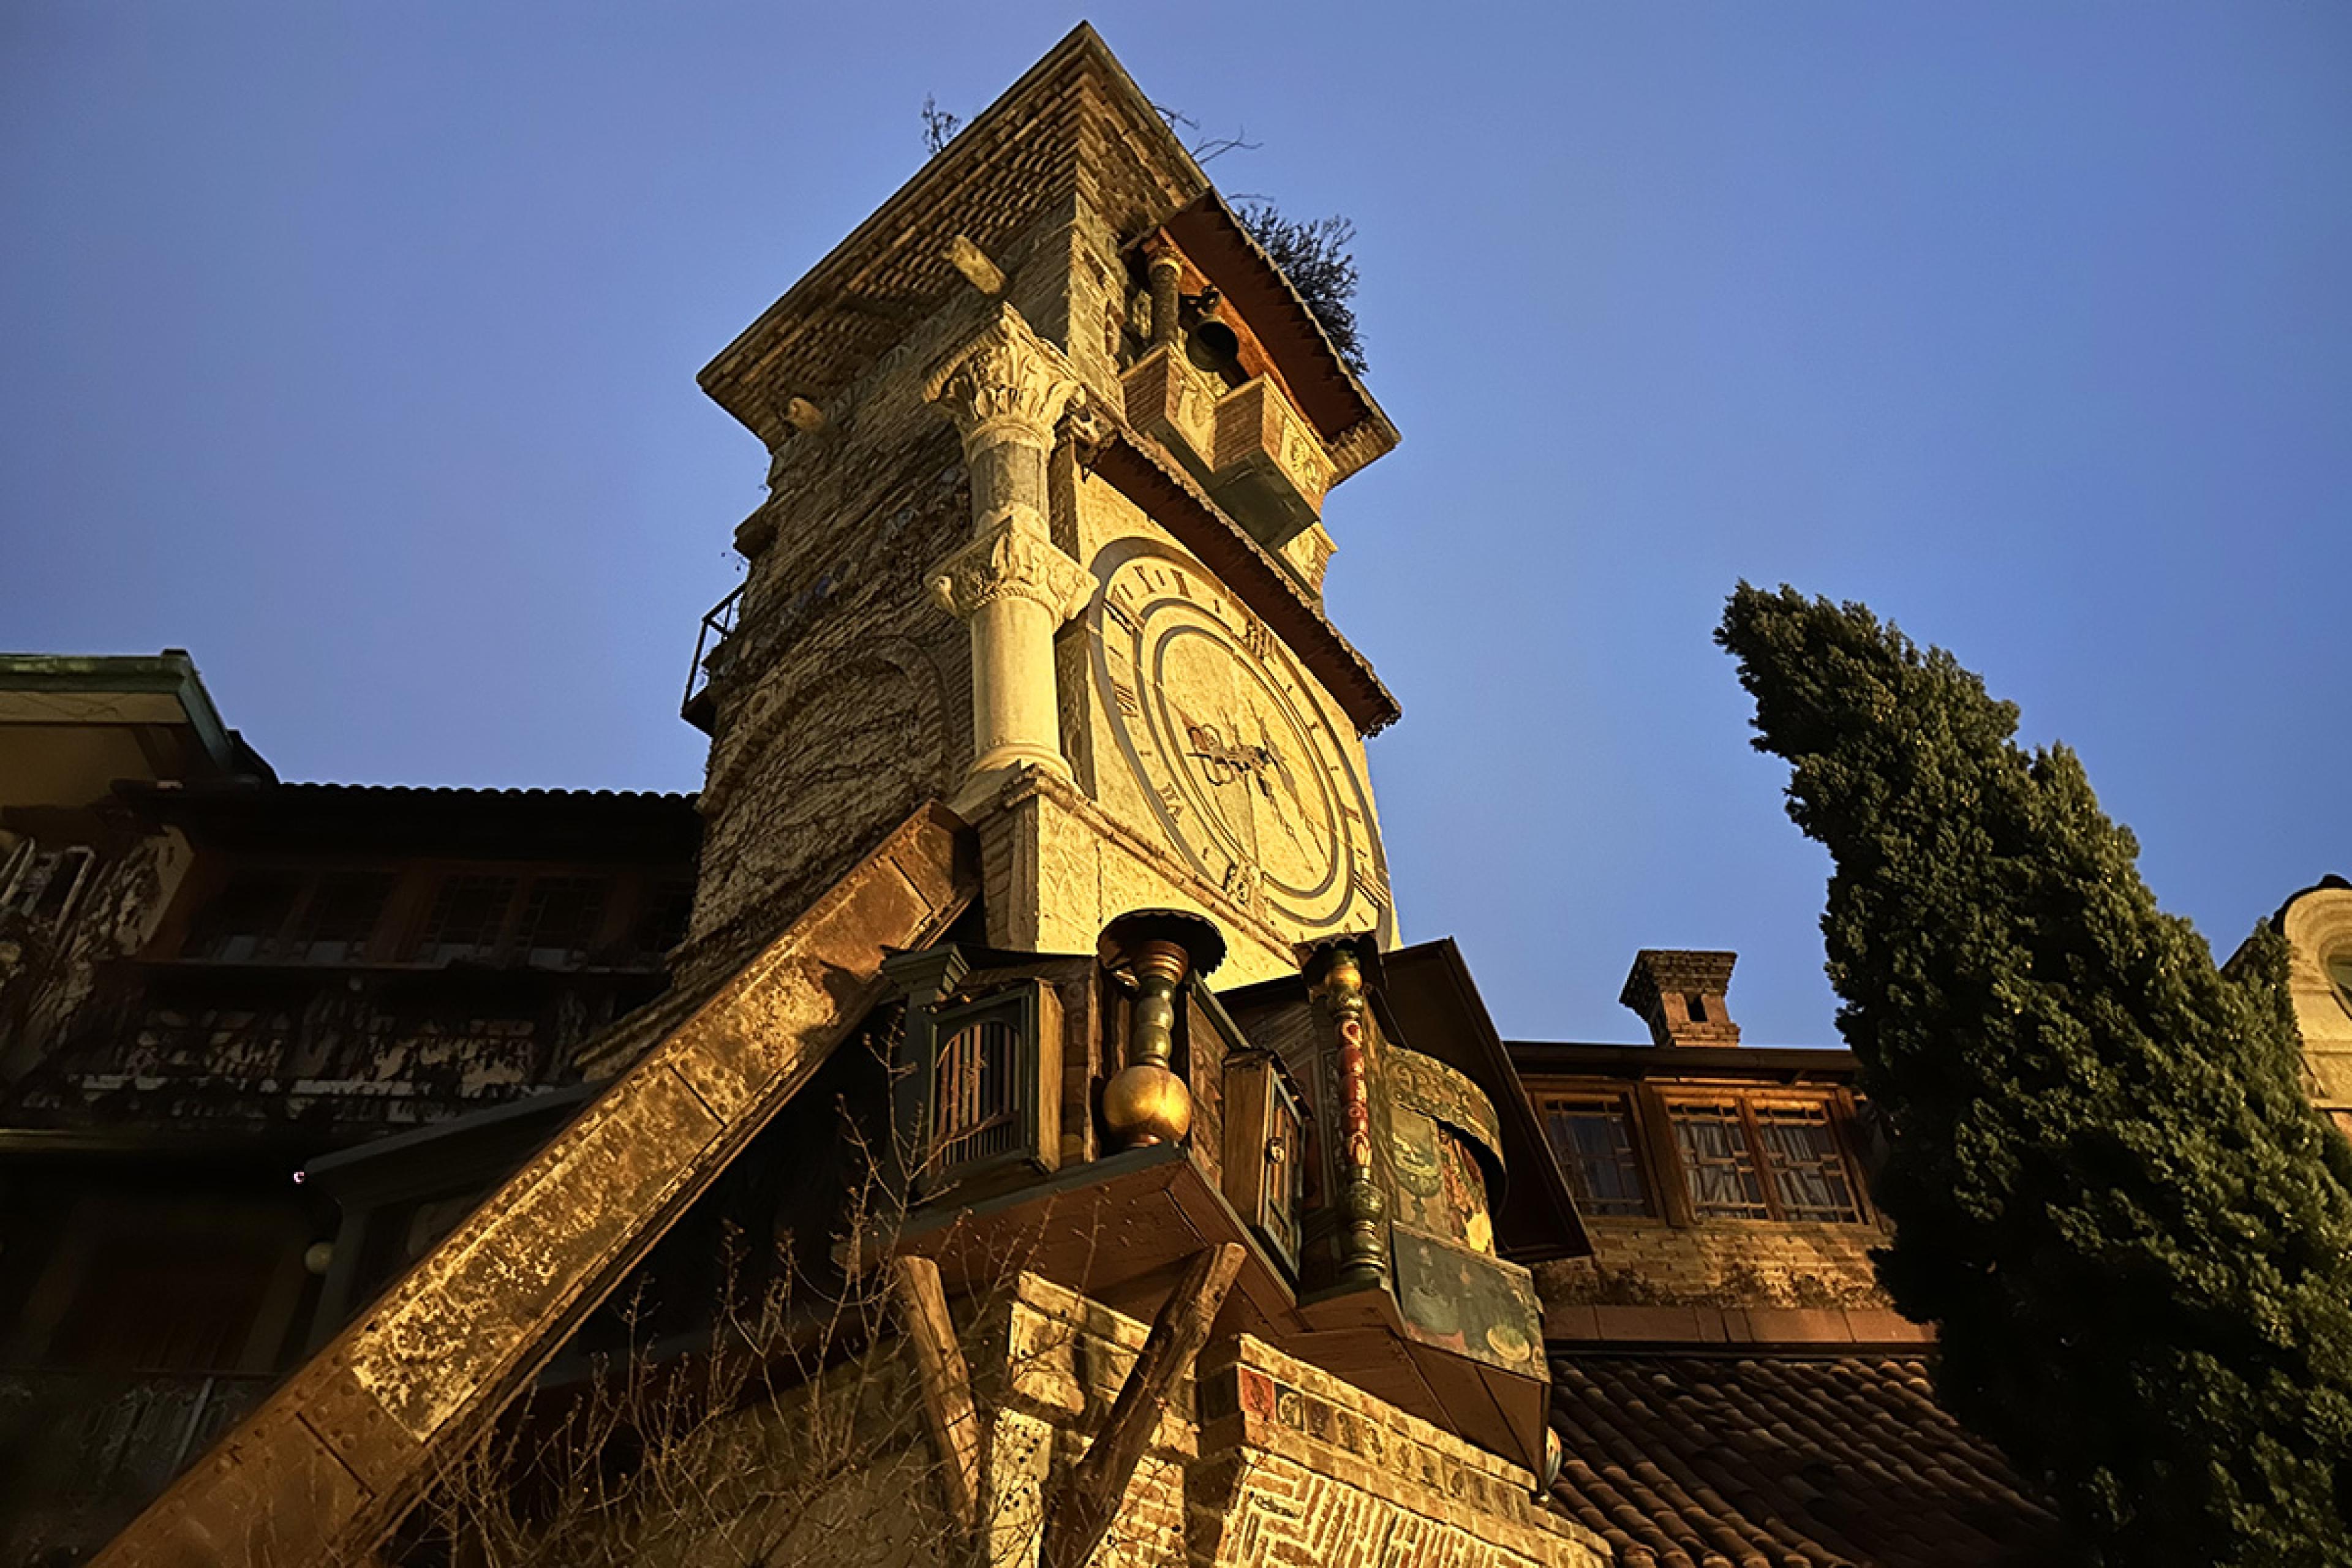 clocktower at sunset